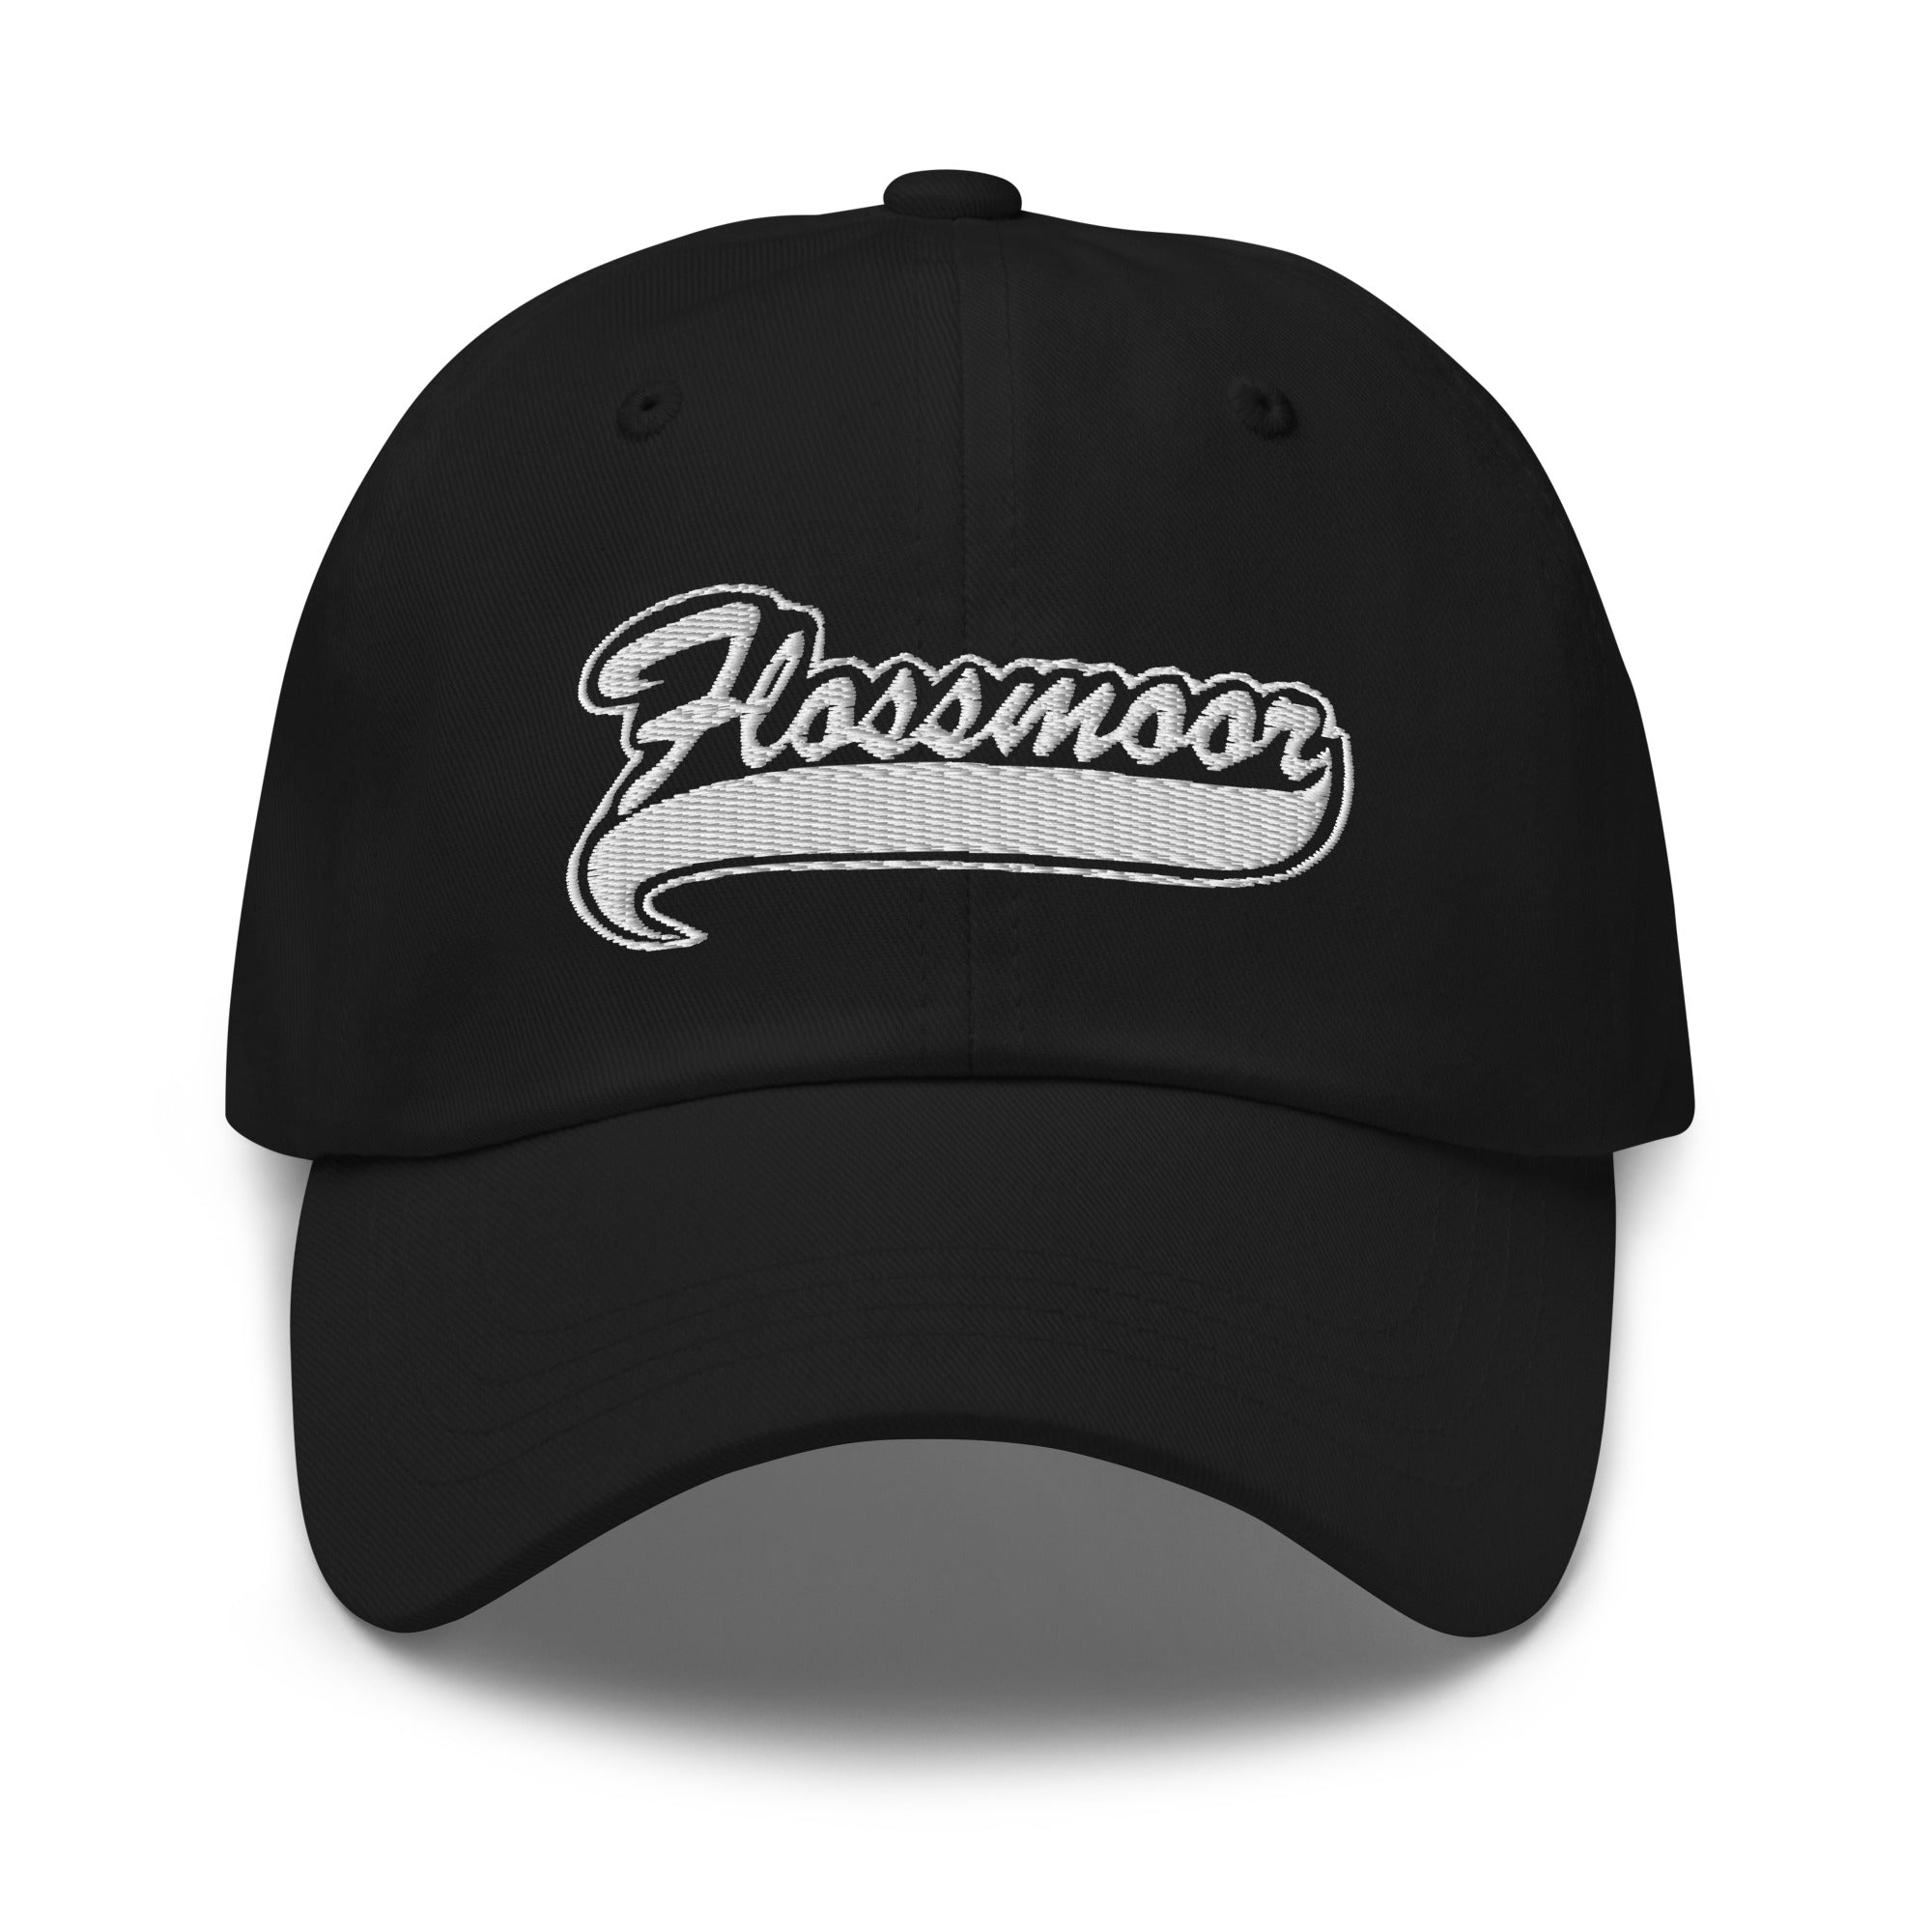 Flossmoor Swoosh Dad hat